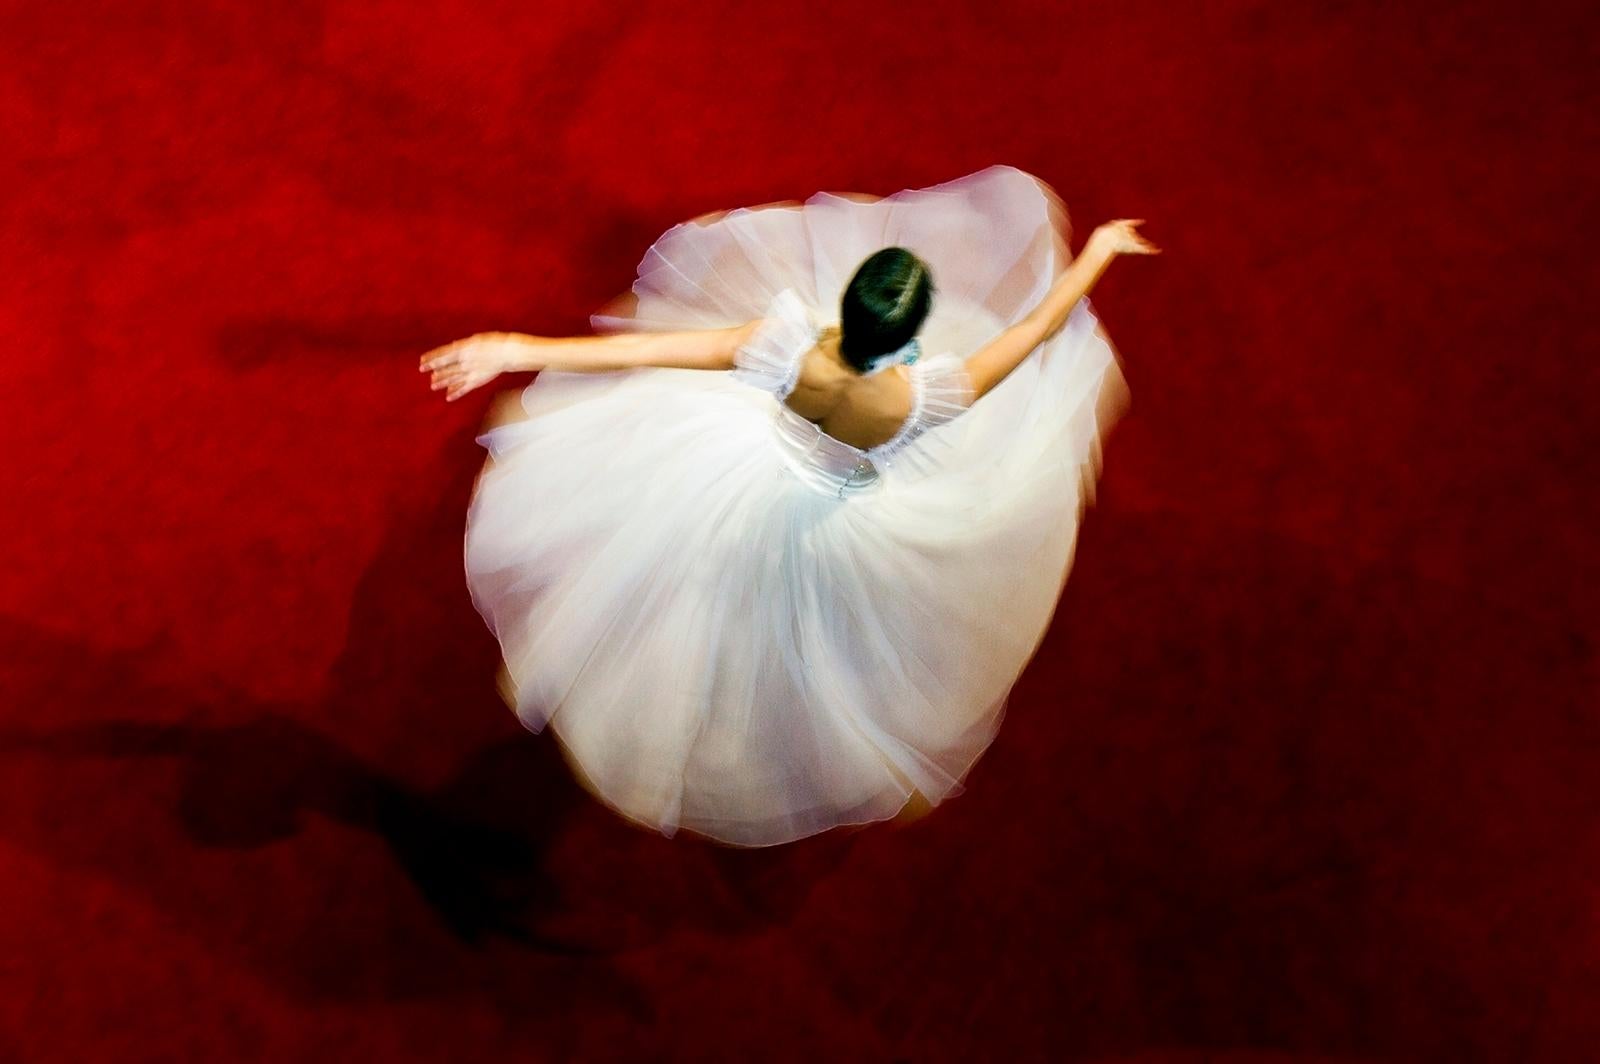 Danseuse - Livraison gratuite - Impression d'art limitée signée, contemporaine, danse, romaine - Rouge Figurative Photograph par Ian Sanderson